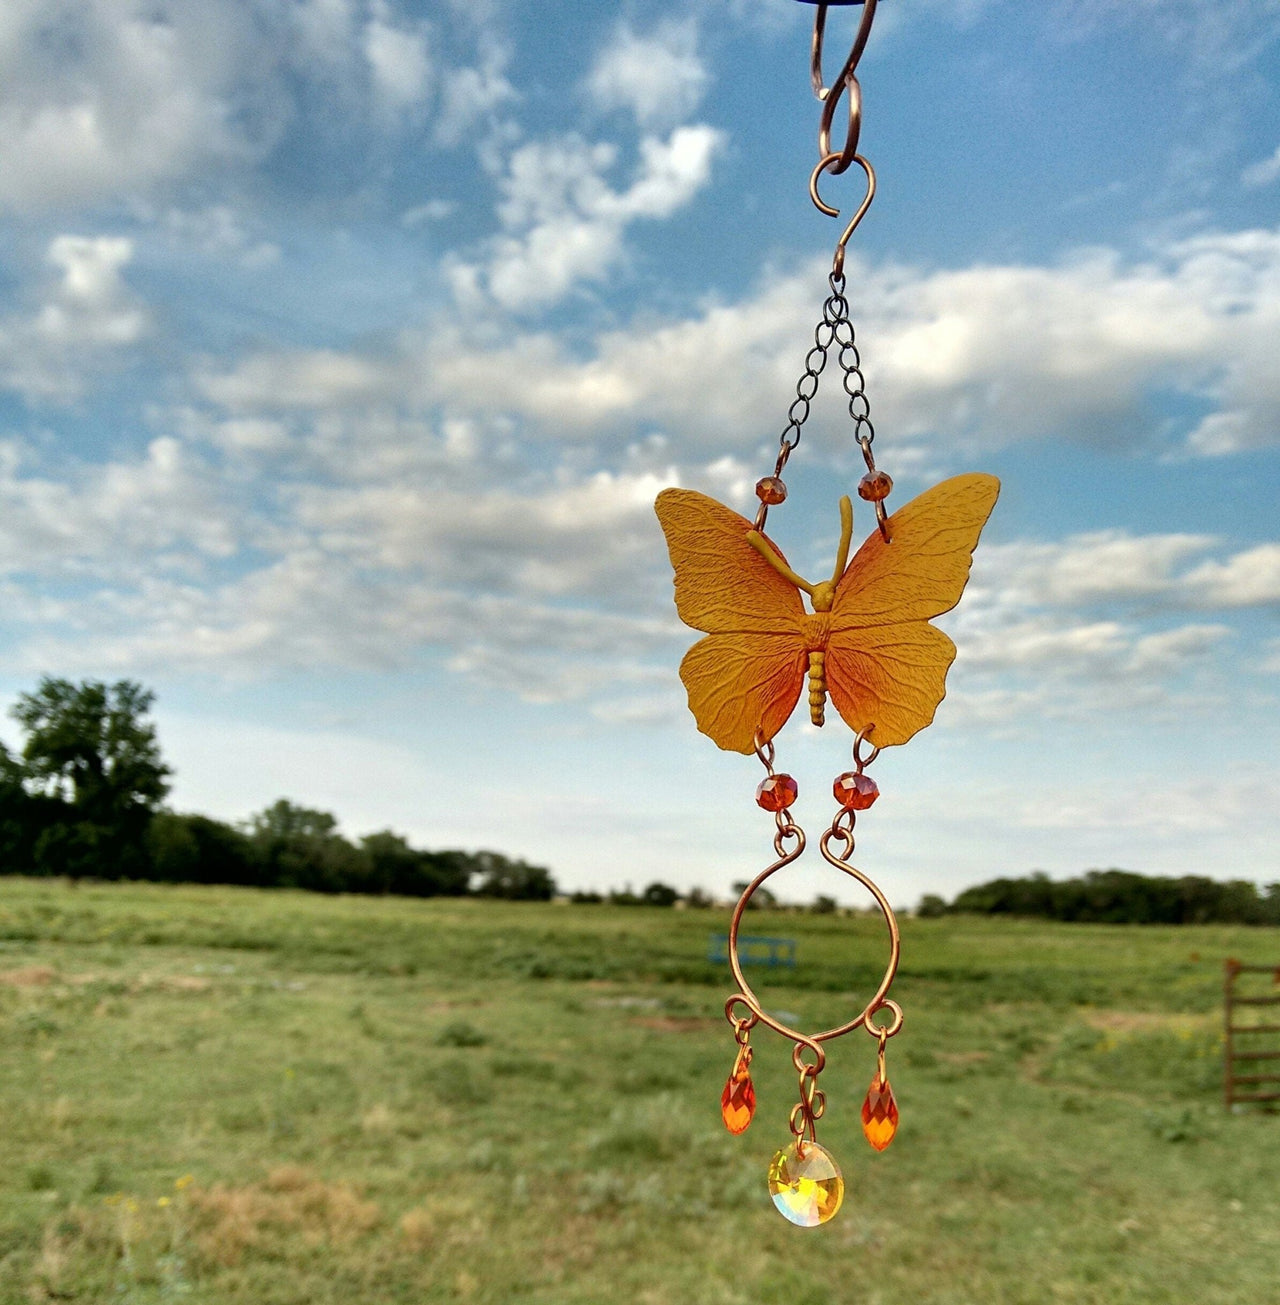 Handcrafted yellow butterfly sun catcher garden ornament